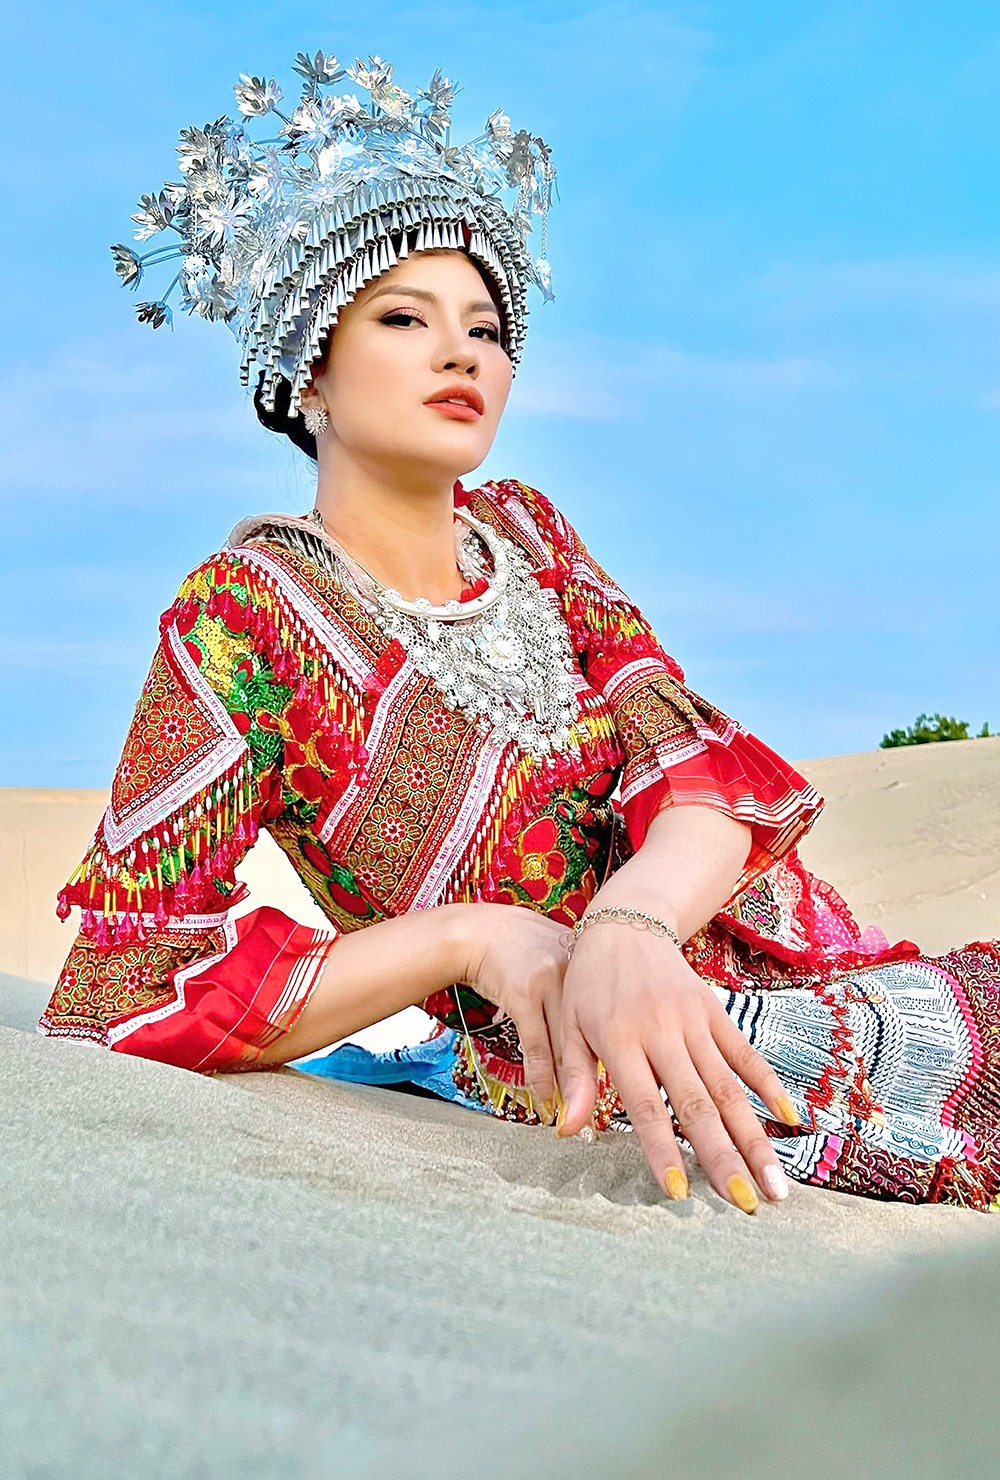 Vốn là người yêu thích văn hóa dân tộc Việt Nam, đặc biệt là những trang phục truyền thống của thiếu nữ vùng cao, Lee Phương đã thực hiện ngay bộ ảnh để lưu giữ những khoảnh khắc xinh đẹp dịu dàng của người con gái miền núi. Ảnh: NSCC.